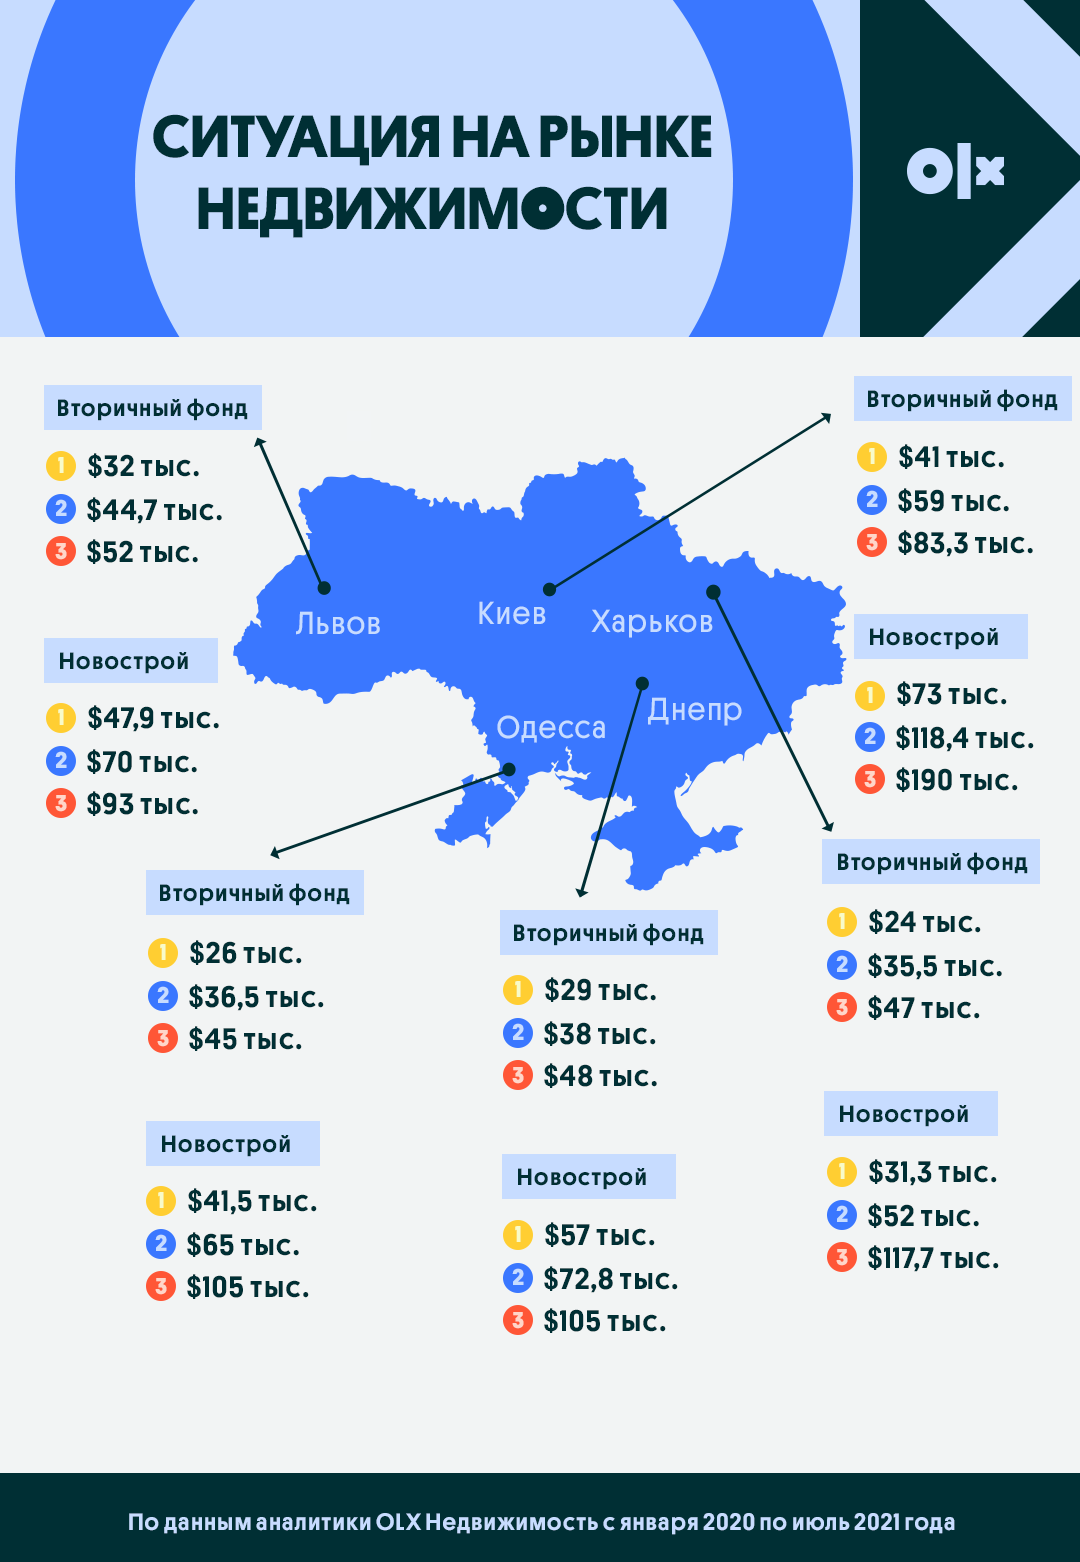 Недвижимость в Украине подорожала на 15%, стройплощадки Киева – на 33%